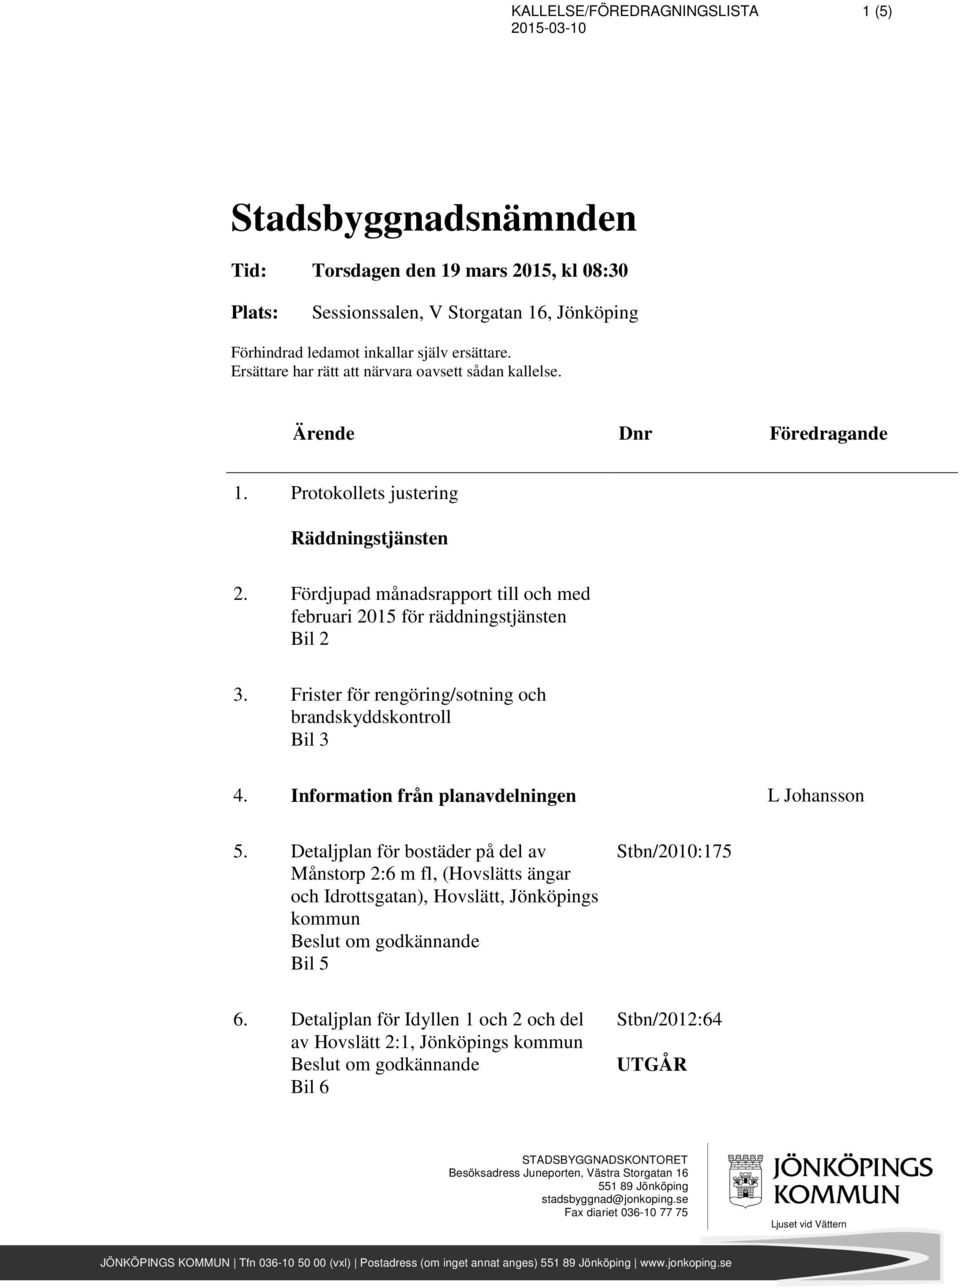 Frister för rengöring/sotning och brandskyddskontroll Bil 3 4. Information från planavdelningen L Johansson 5.